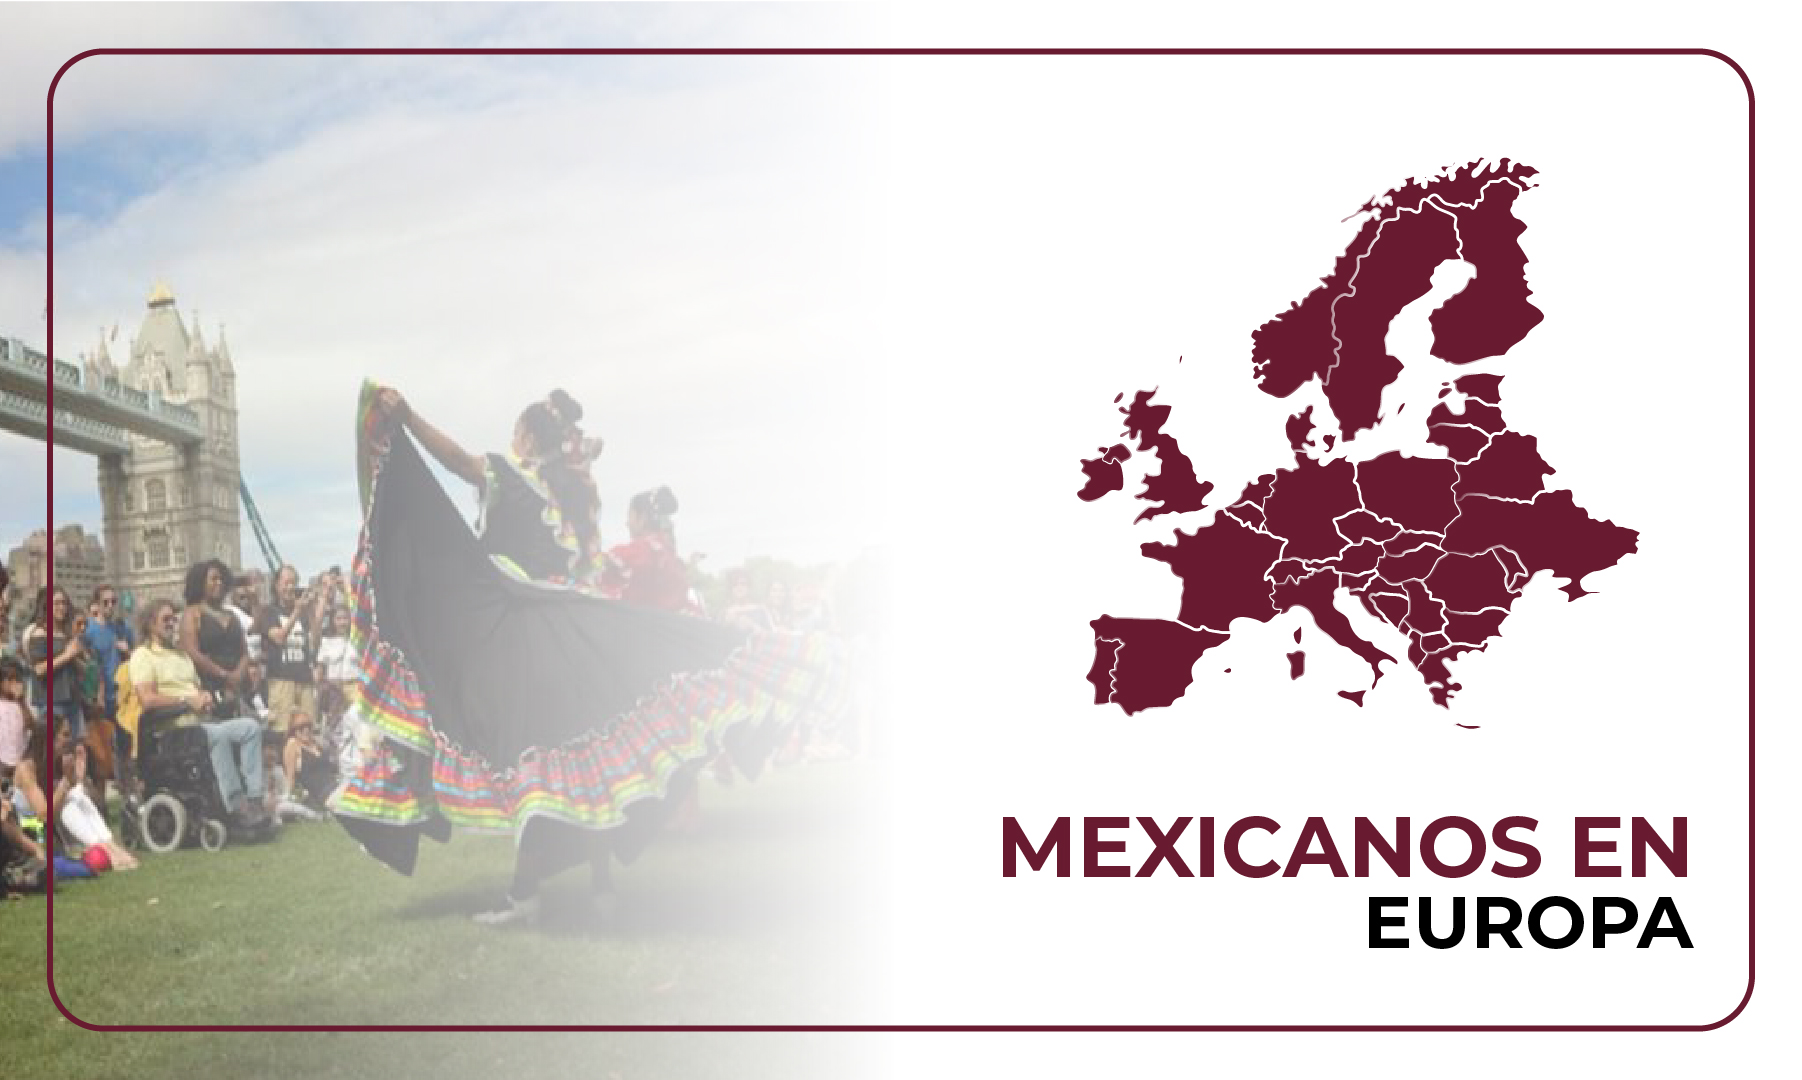 Mexicanos en Europa